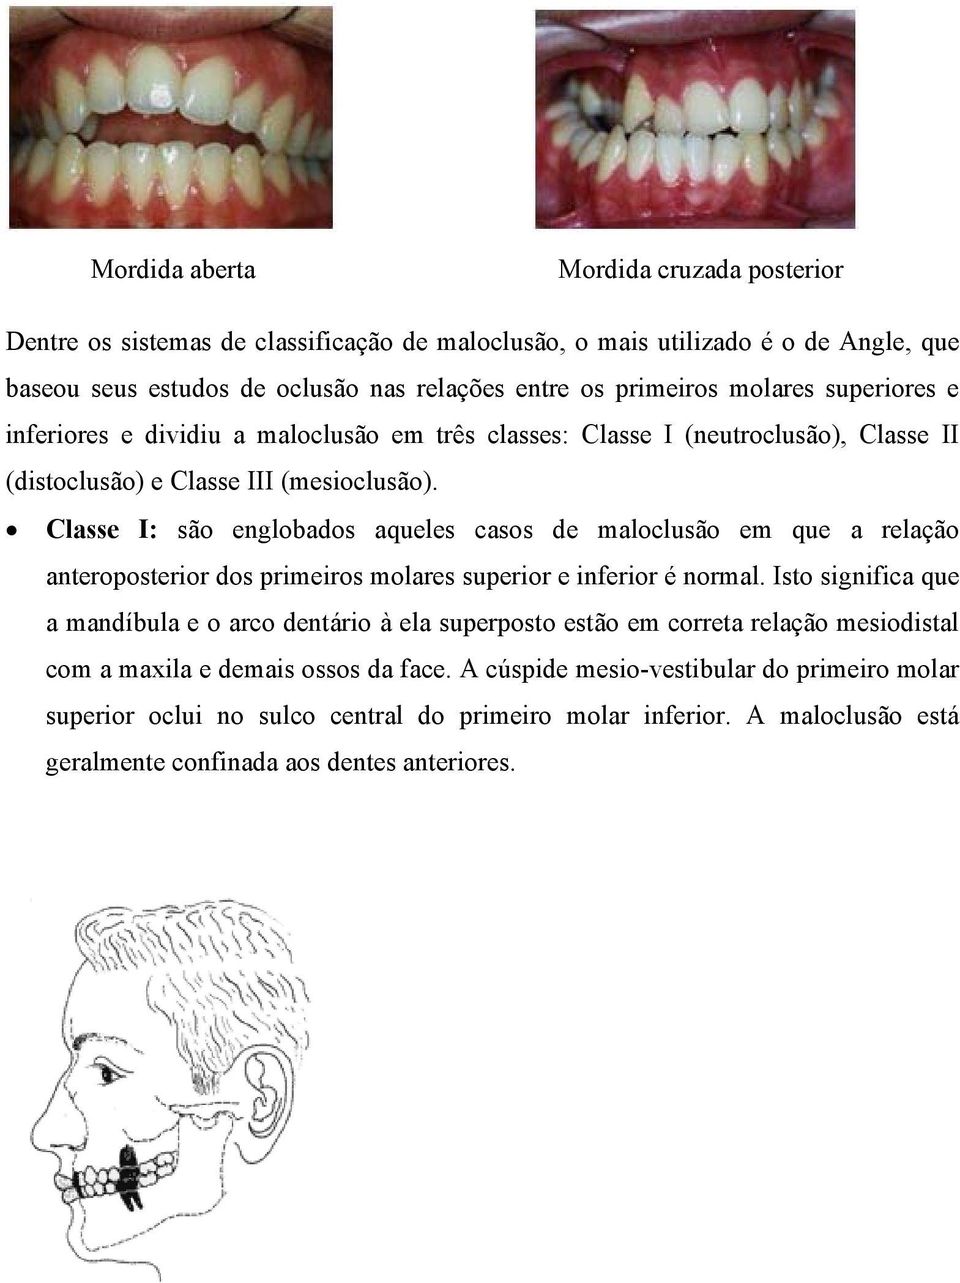 Classe I: são englobados aqueles casos de maloclusão em que a relação anteroposterior dos primeiros molares superior e inferior é normal.